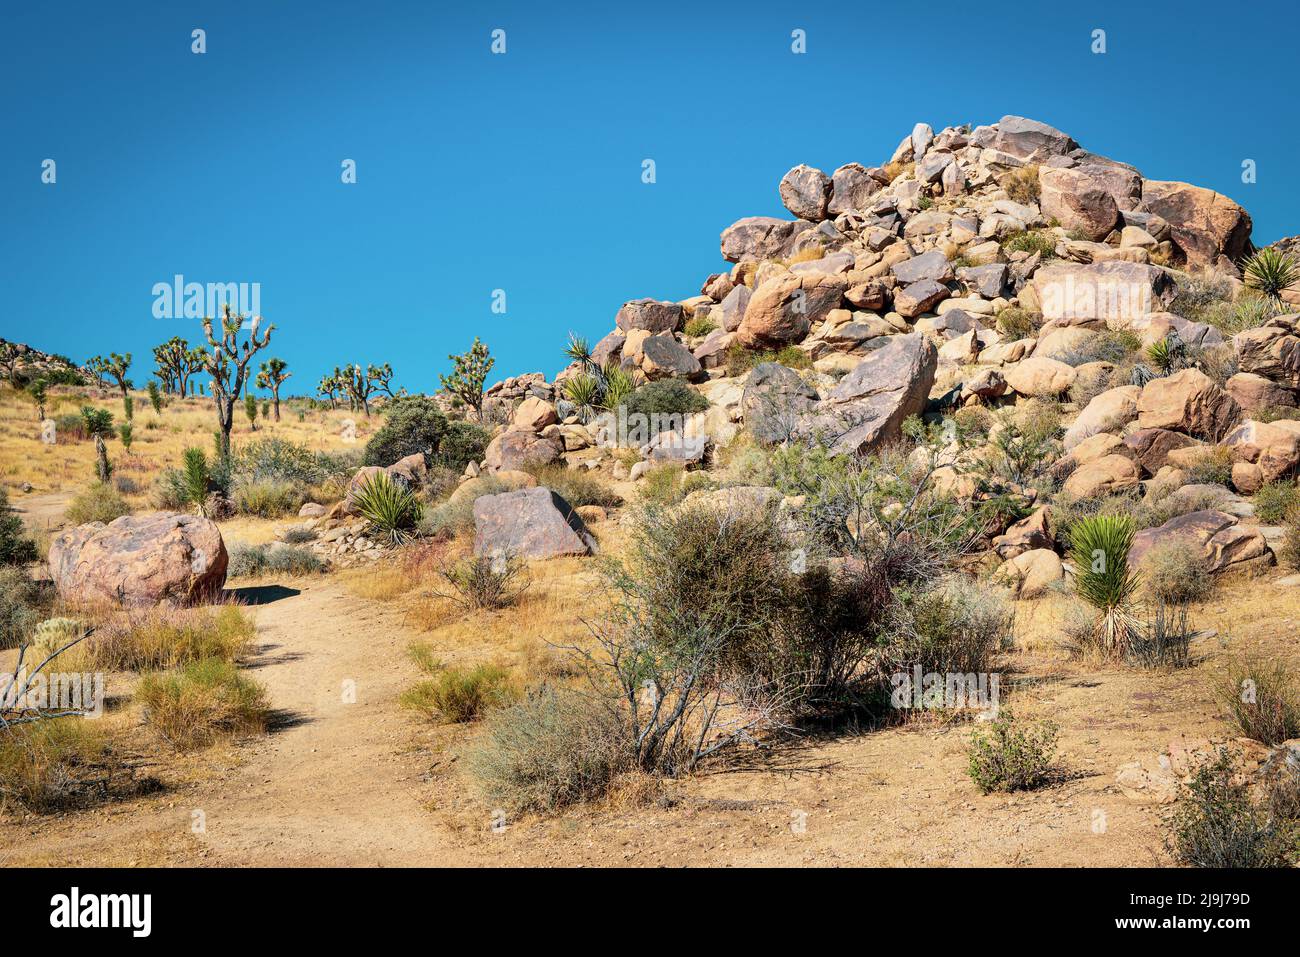 El único árbol de Josué con su tronco con barba y hojas puntiagudas en las rocas y rocas del Parque Nacional Joshua Tree, en el desierto de Mojave, CA Foto de stock